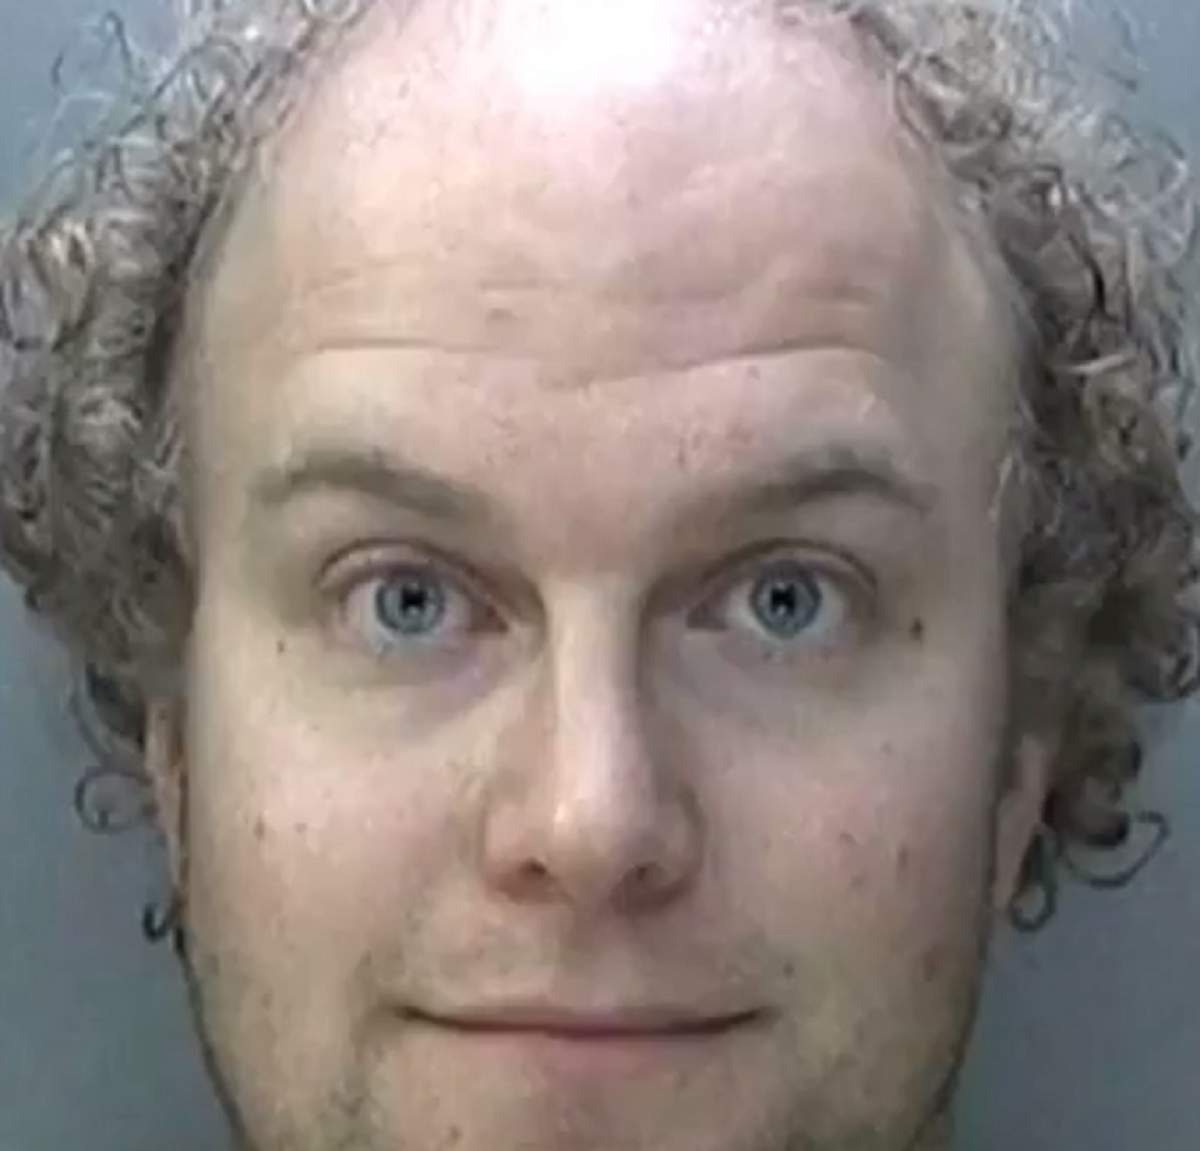 VIDEO / Cel mai sadic pedofil a fost prins! Bărbatul îşi obliga victimele să îşi mănânce propriile fecale, apoi le abuza sexual